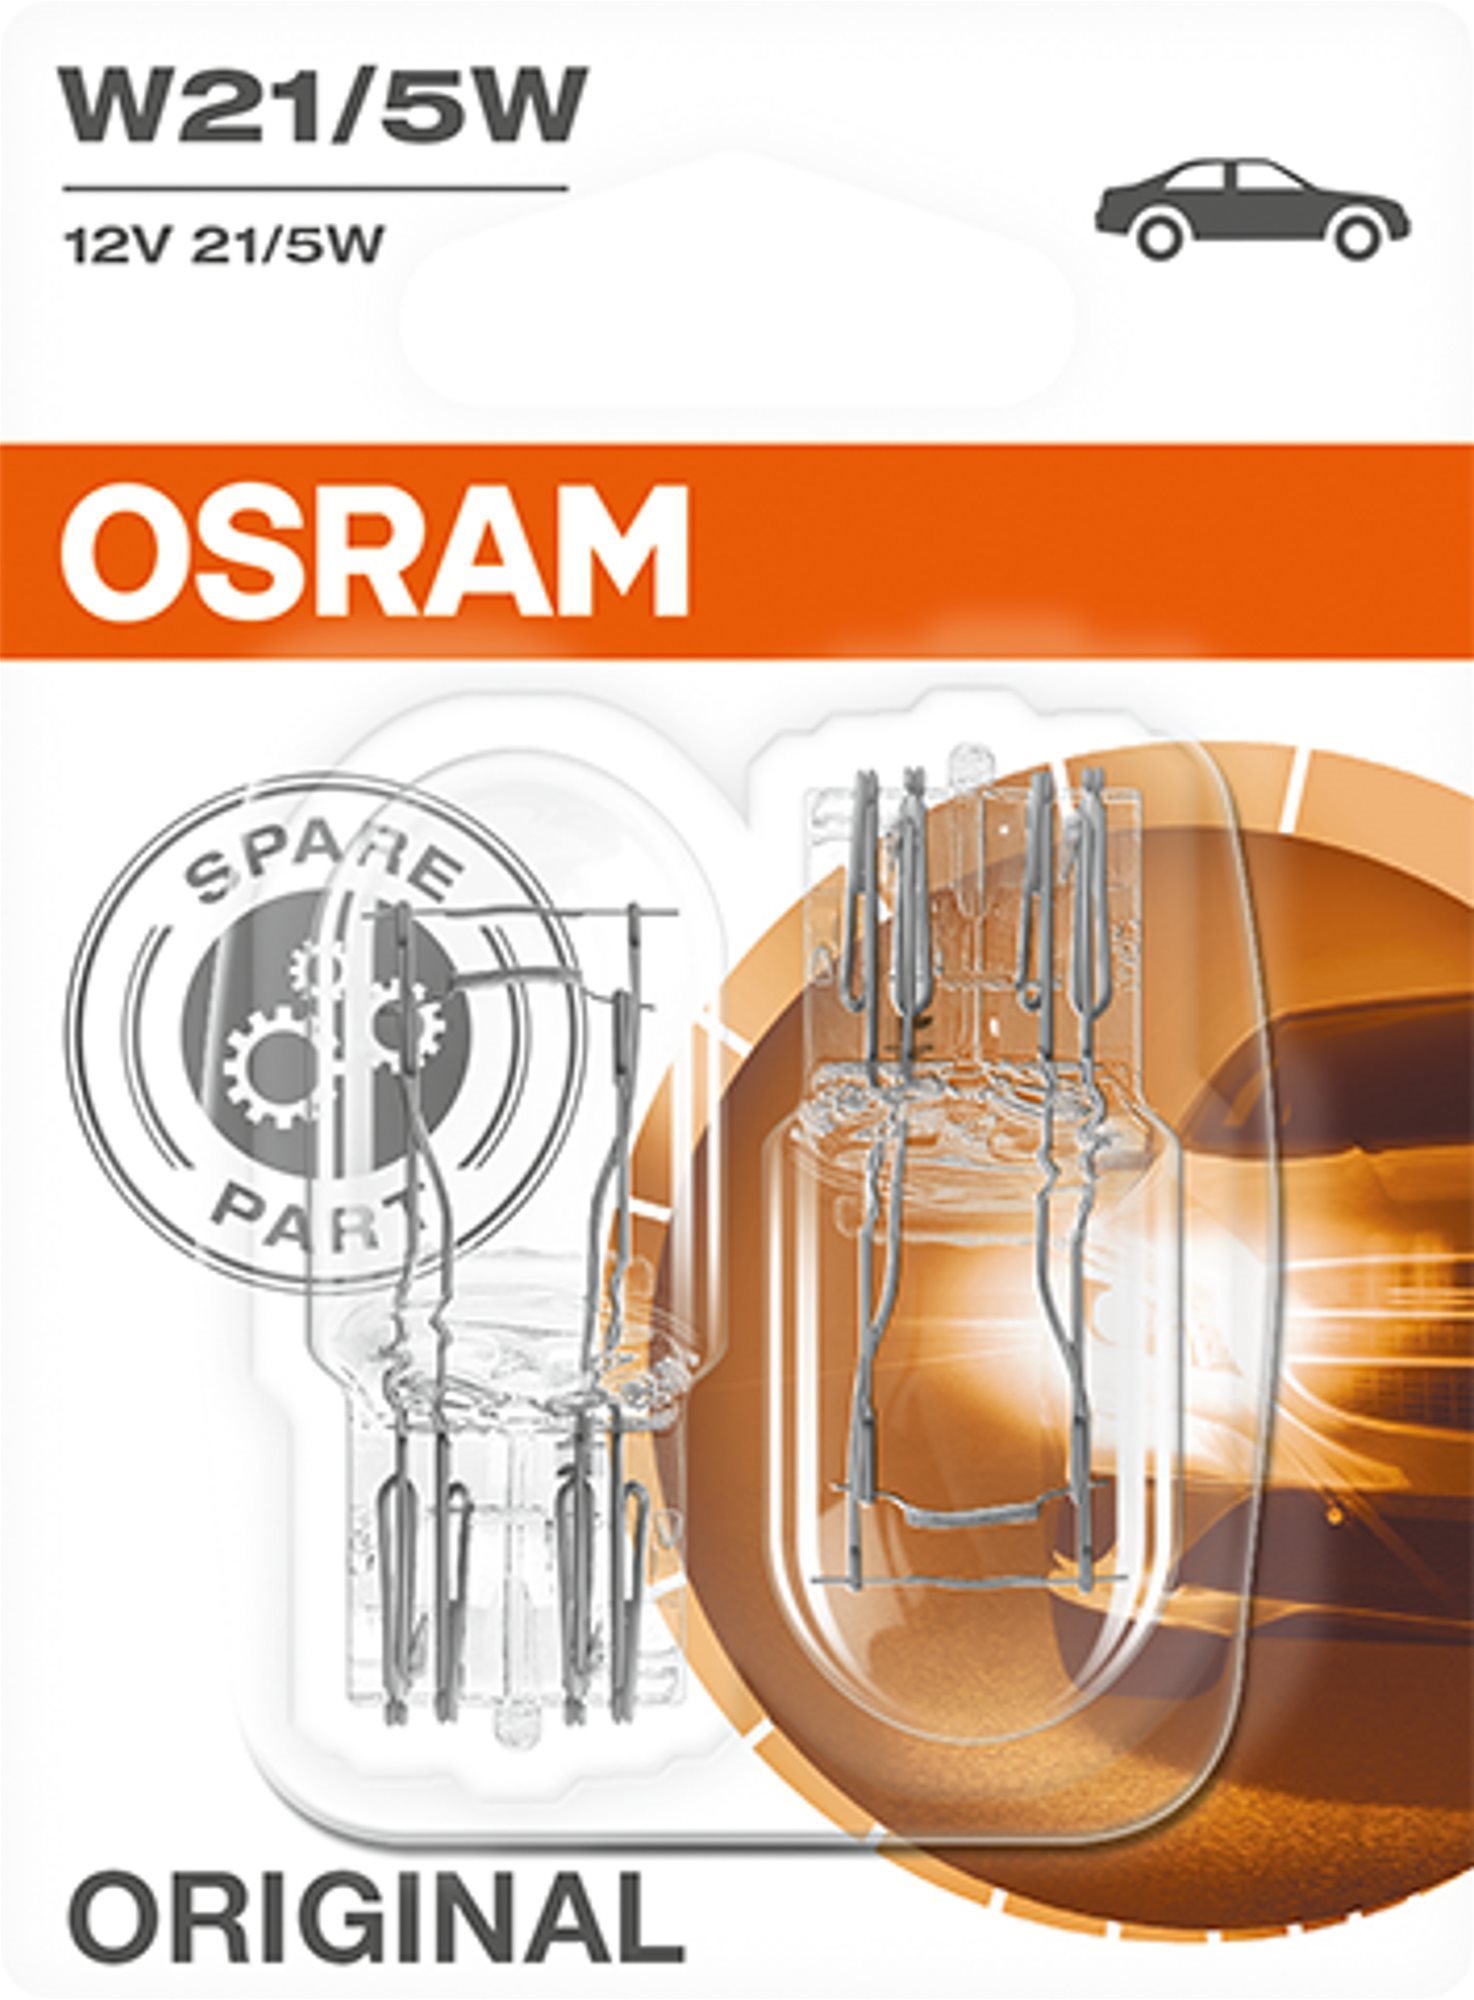 Osram Original W21/5 W, 12 V, 21/5 W, W3x16q, 2 db